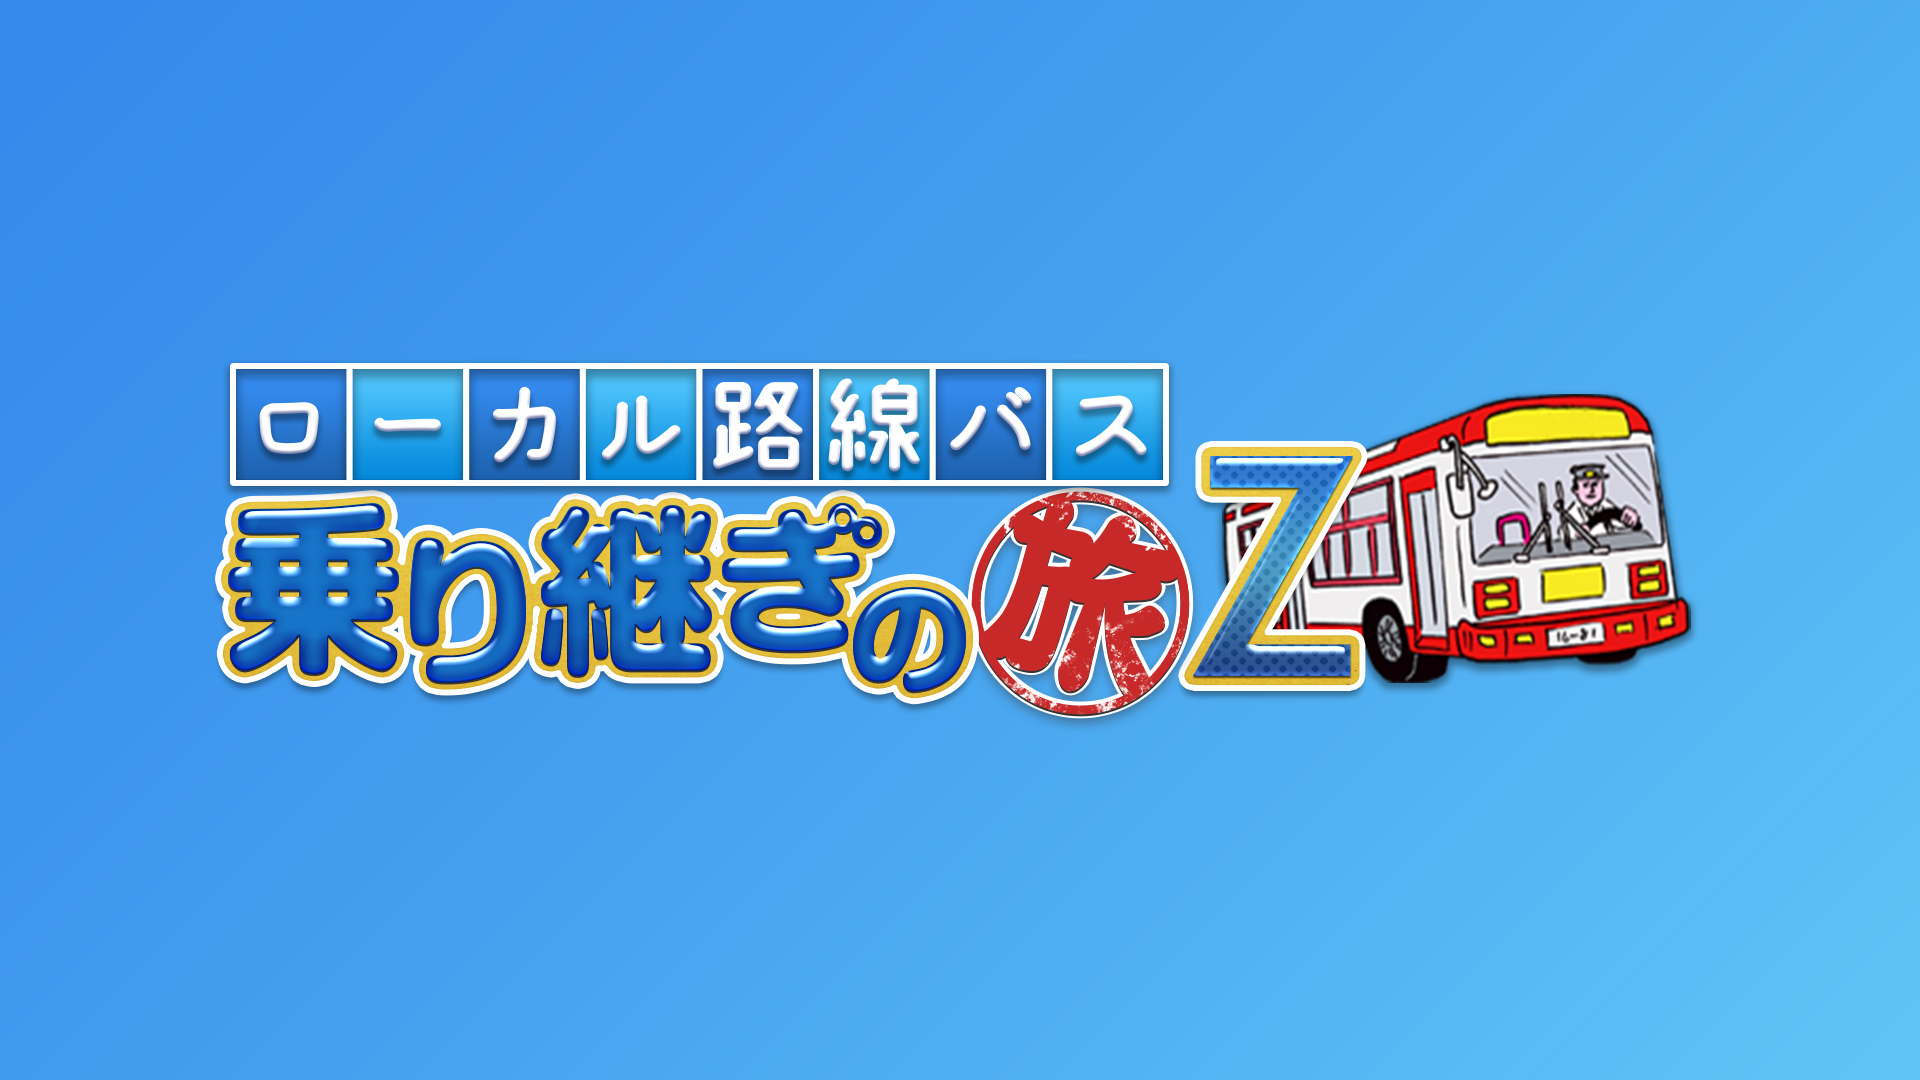 ローカル路線バス乗り継ぎの旅Z(バラエティ / 2017) - 動画配信